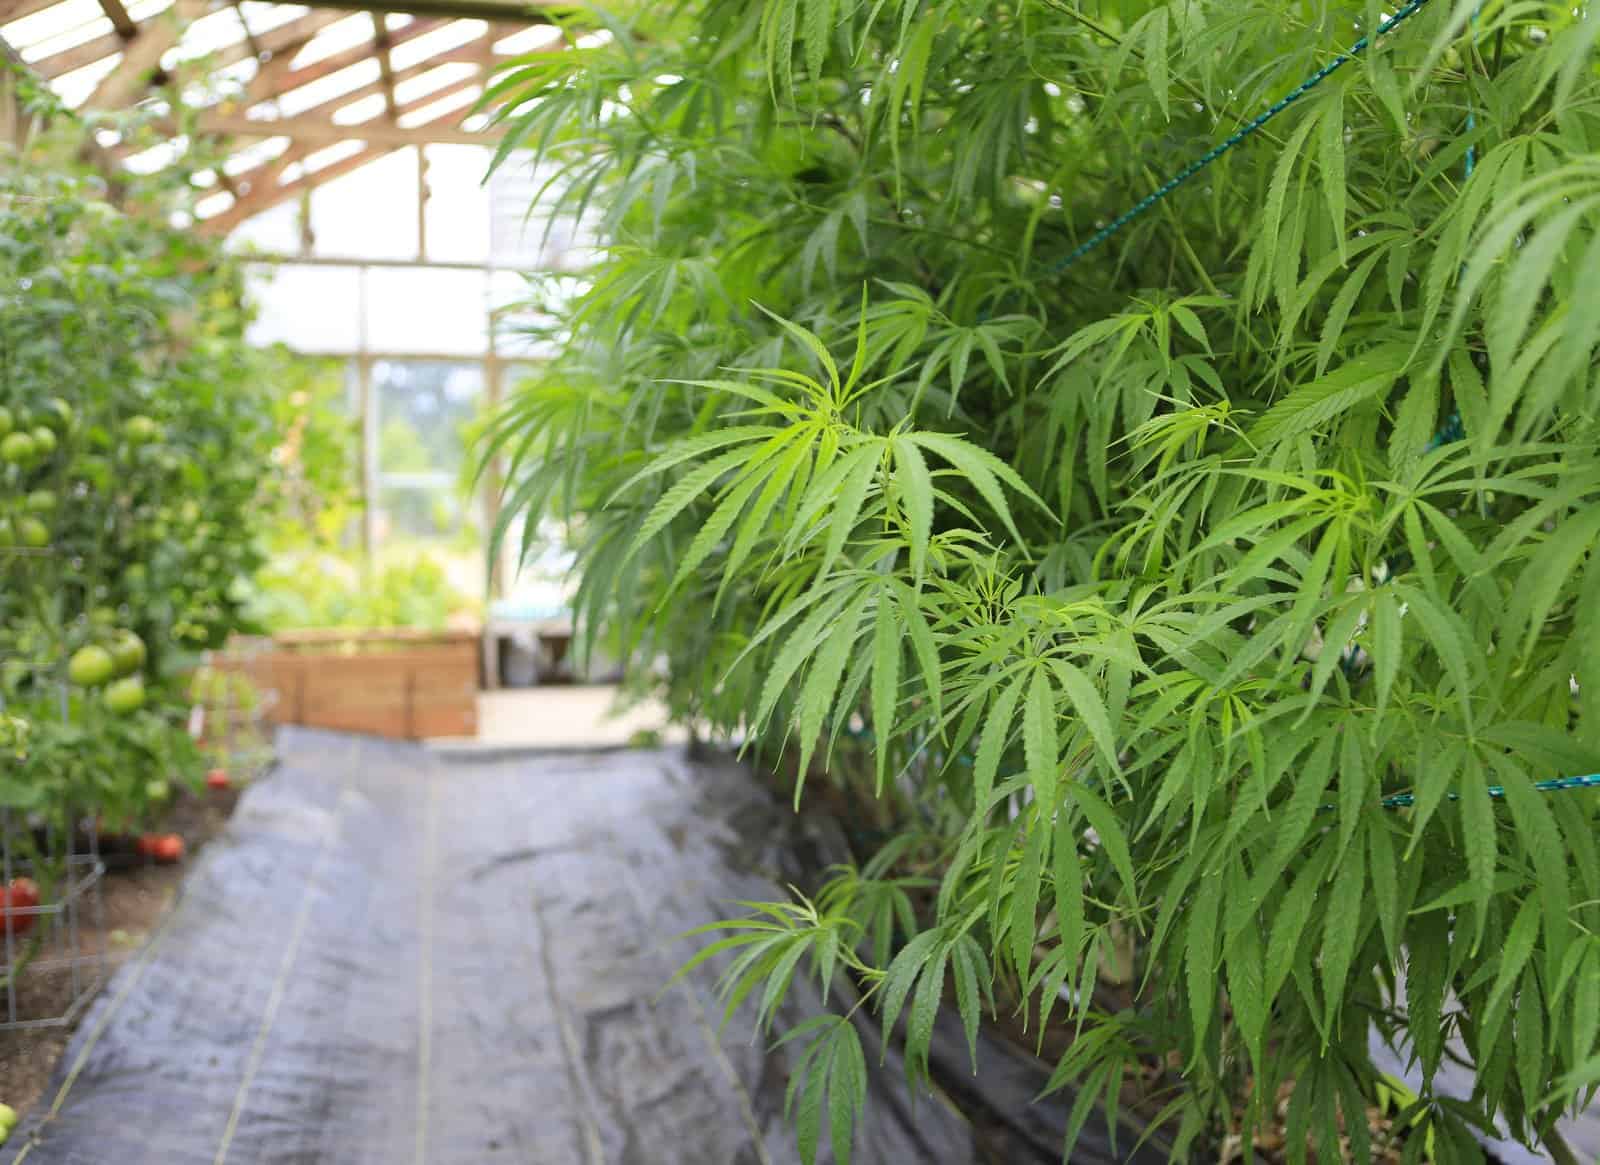 How to grow marijuana inside without lights